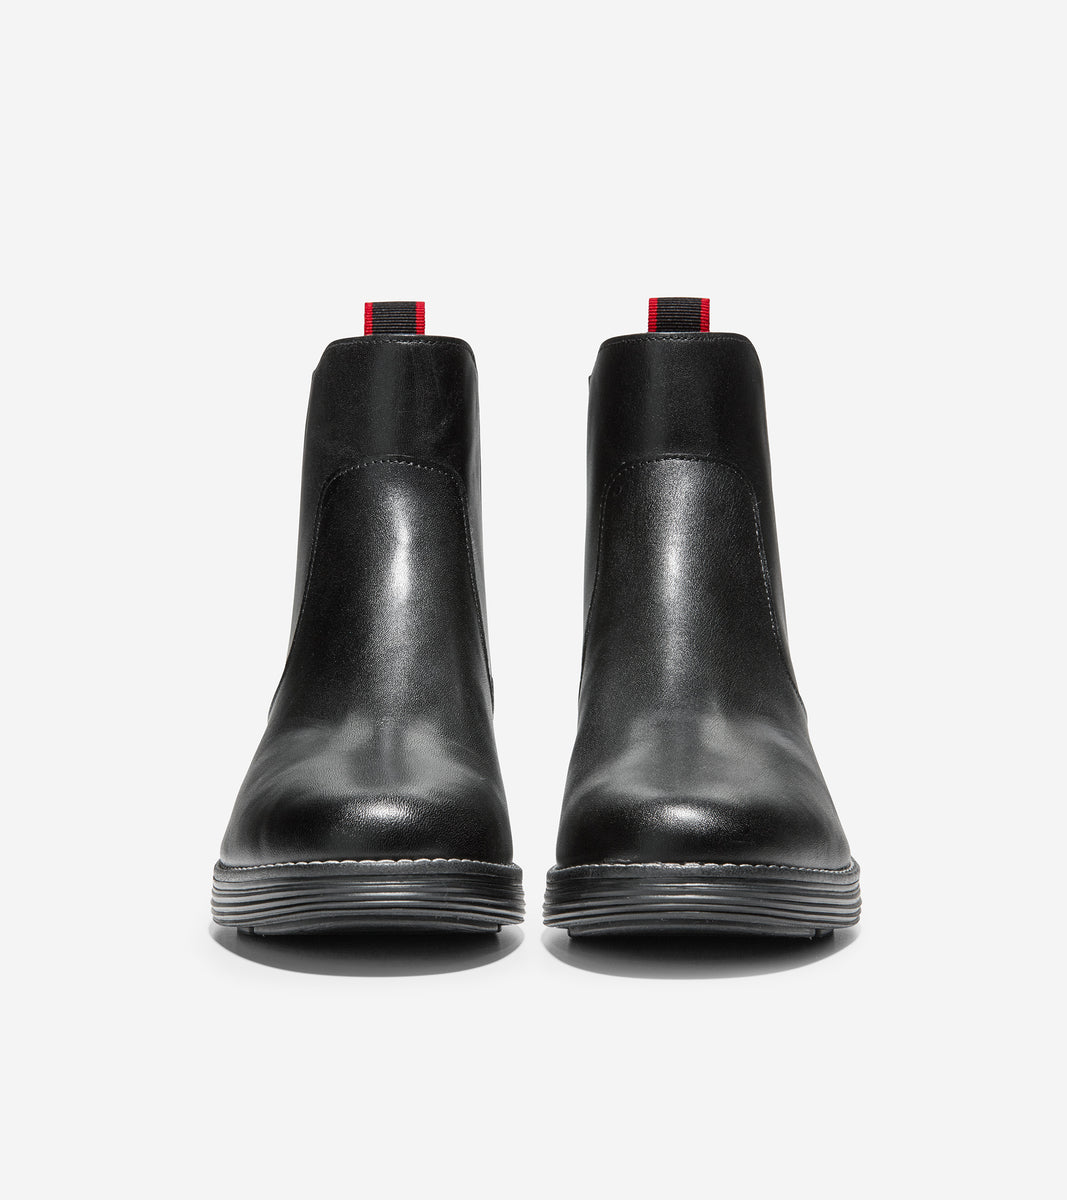 ColeHaan-ØriginalGrand Chelsea Boot-w20361-Black Leather